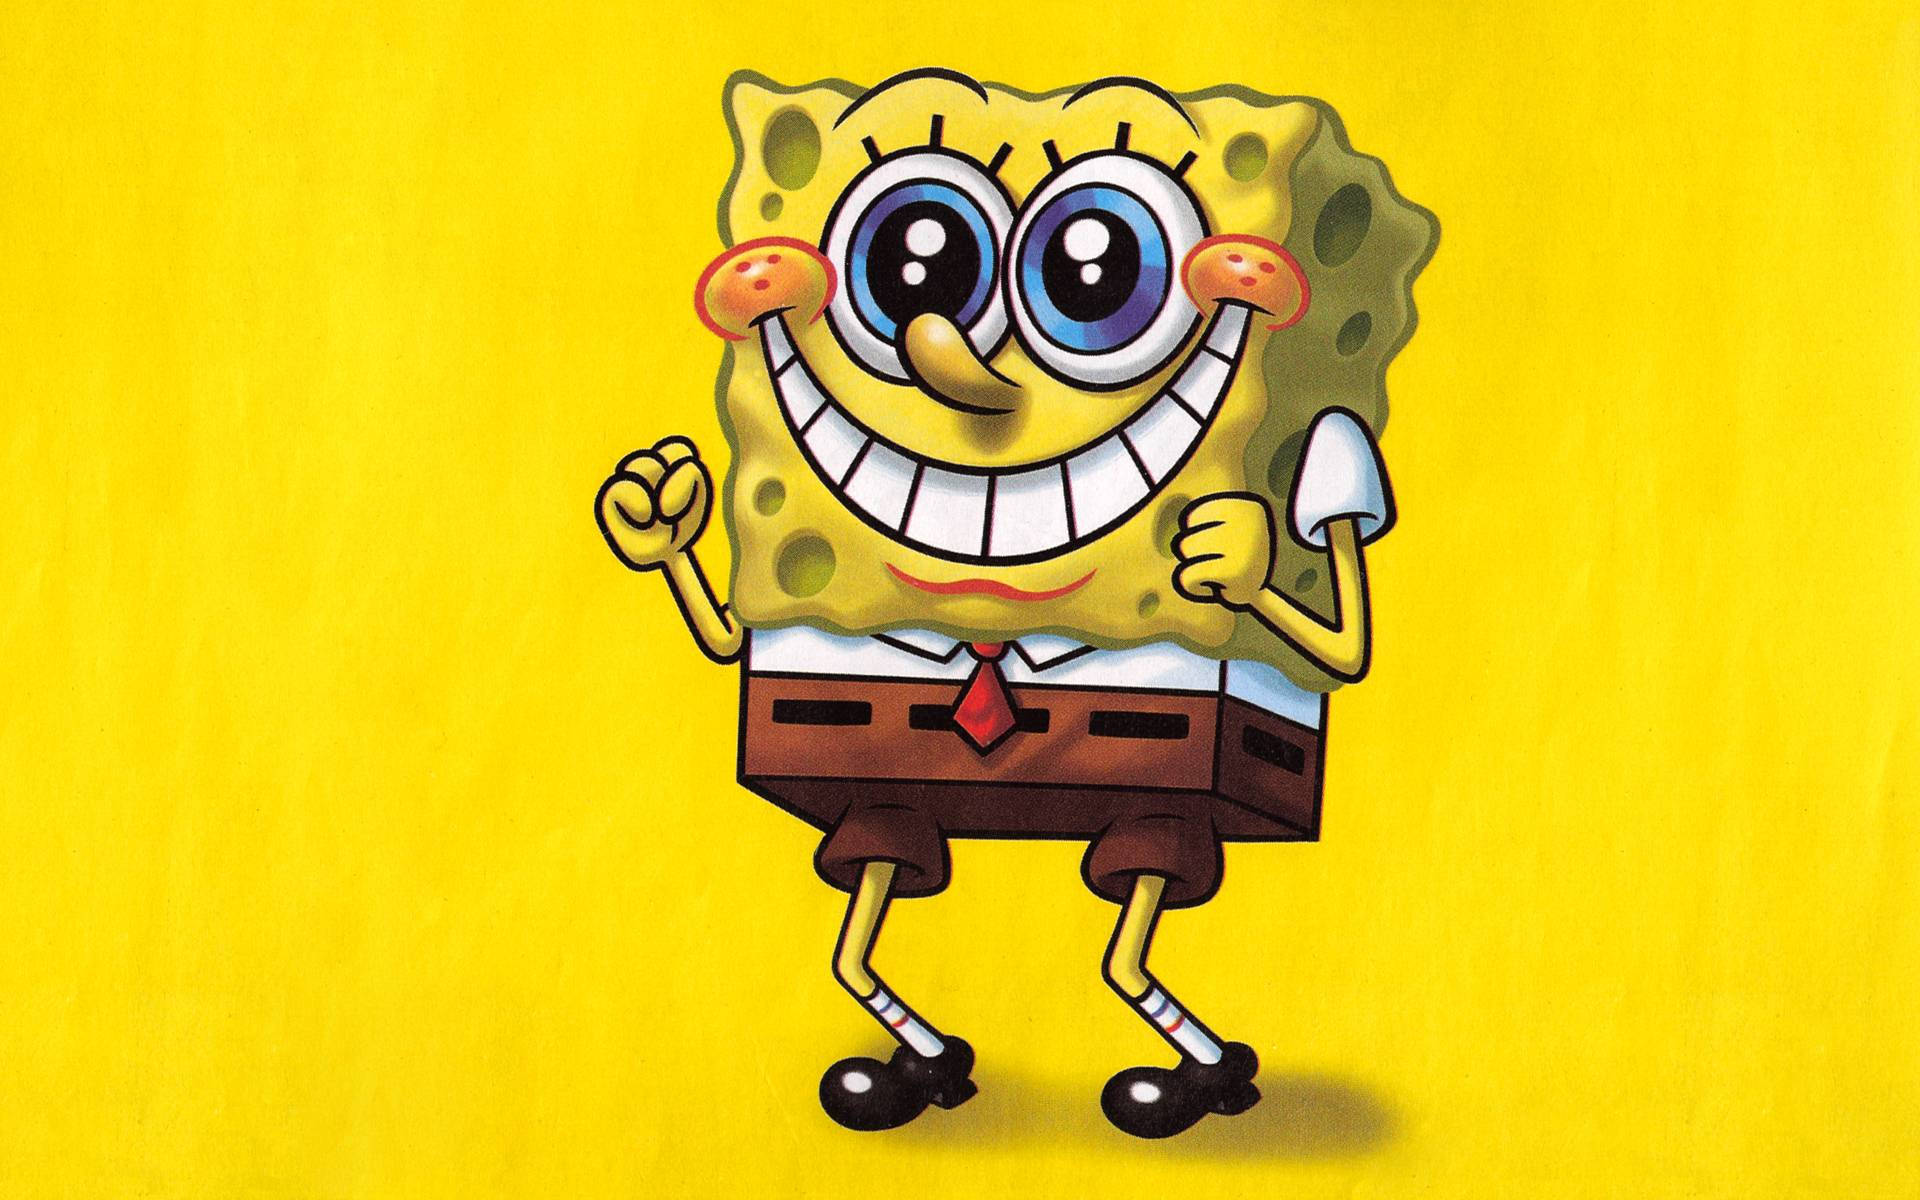 Cute Spongebob Squarepants Excited Face